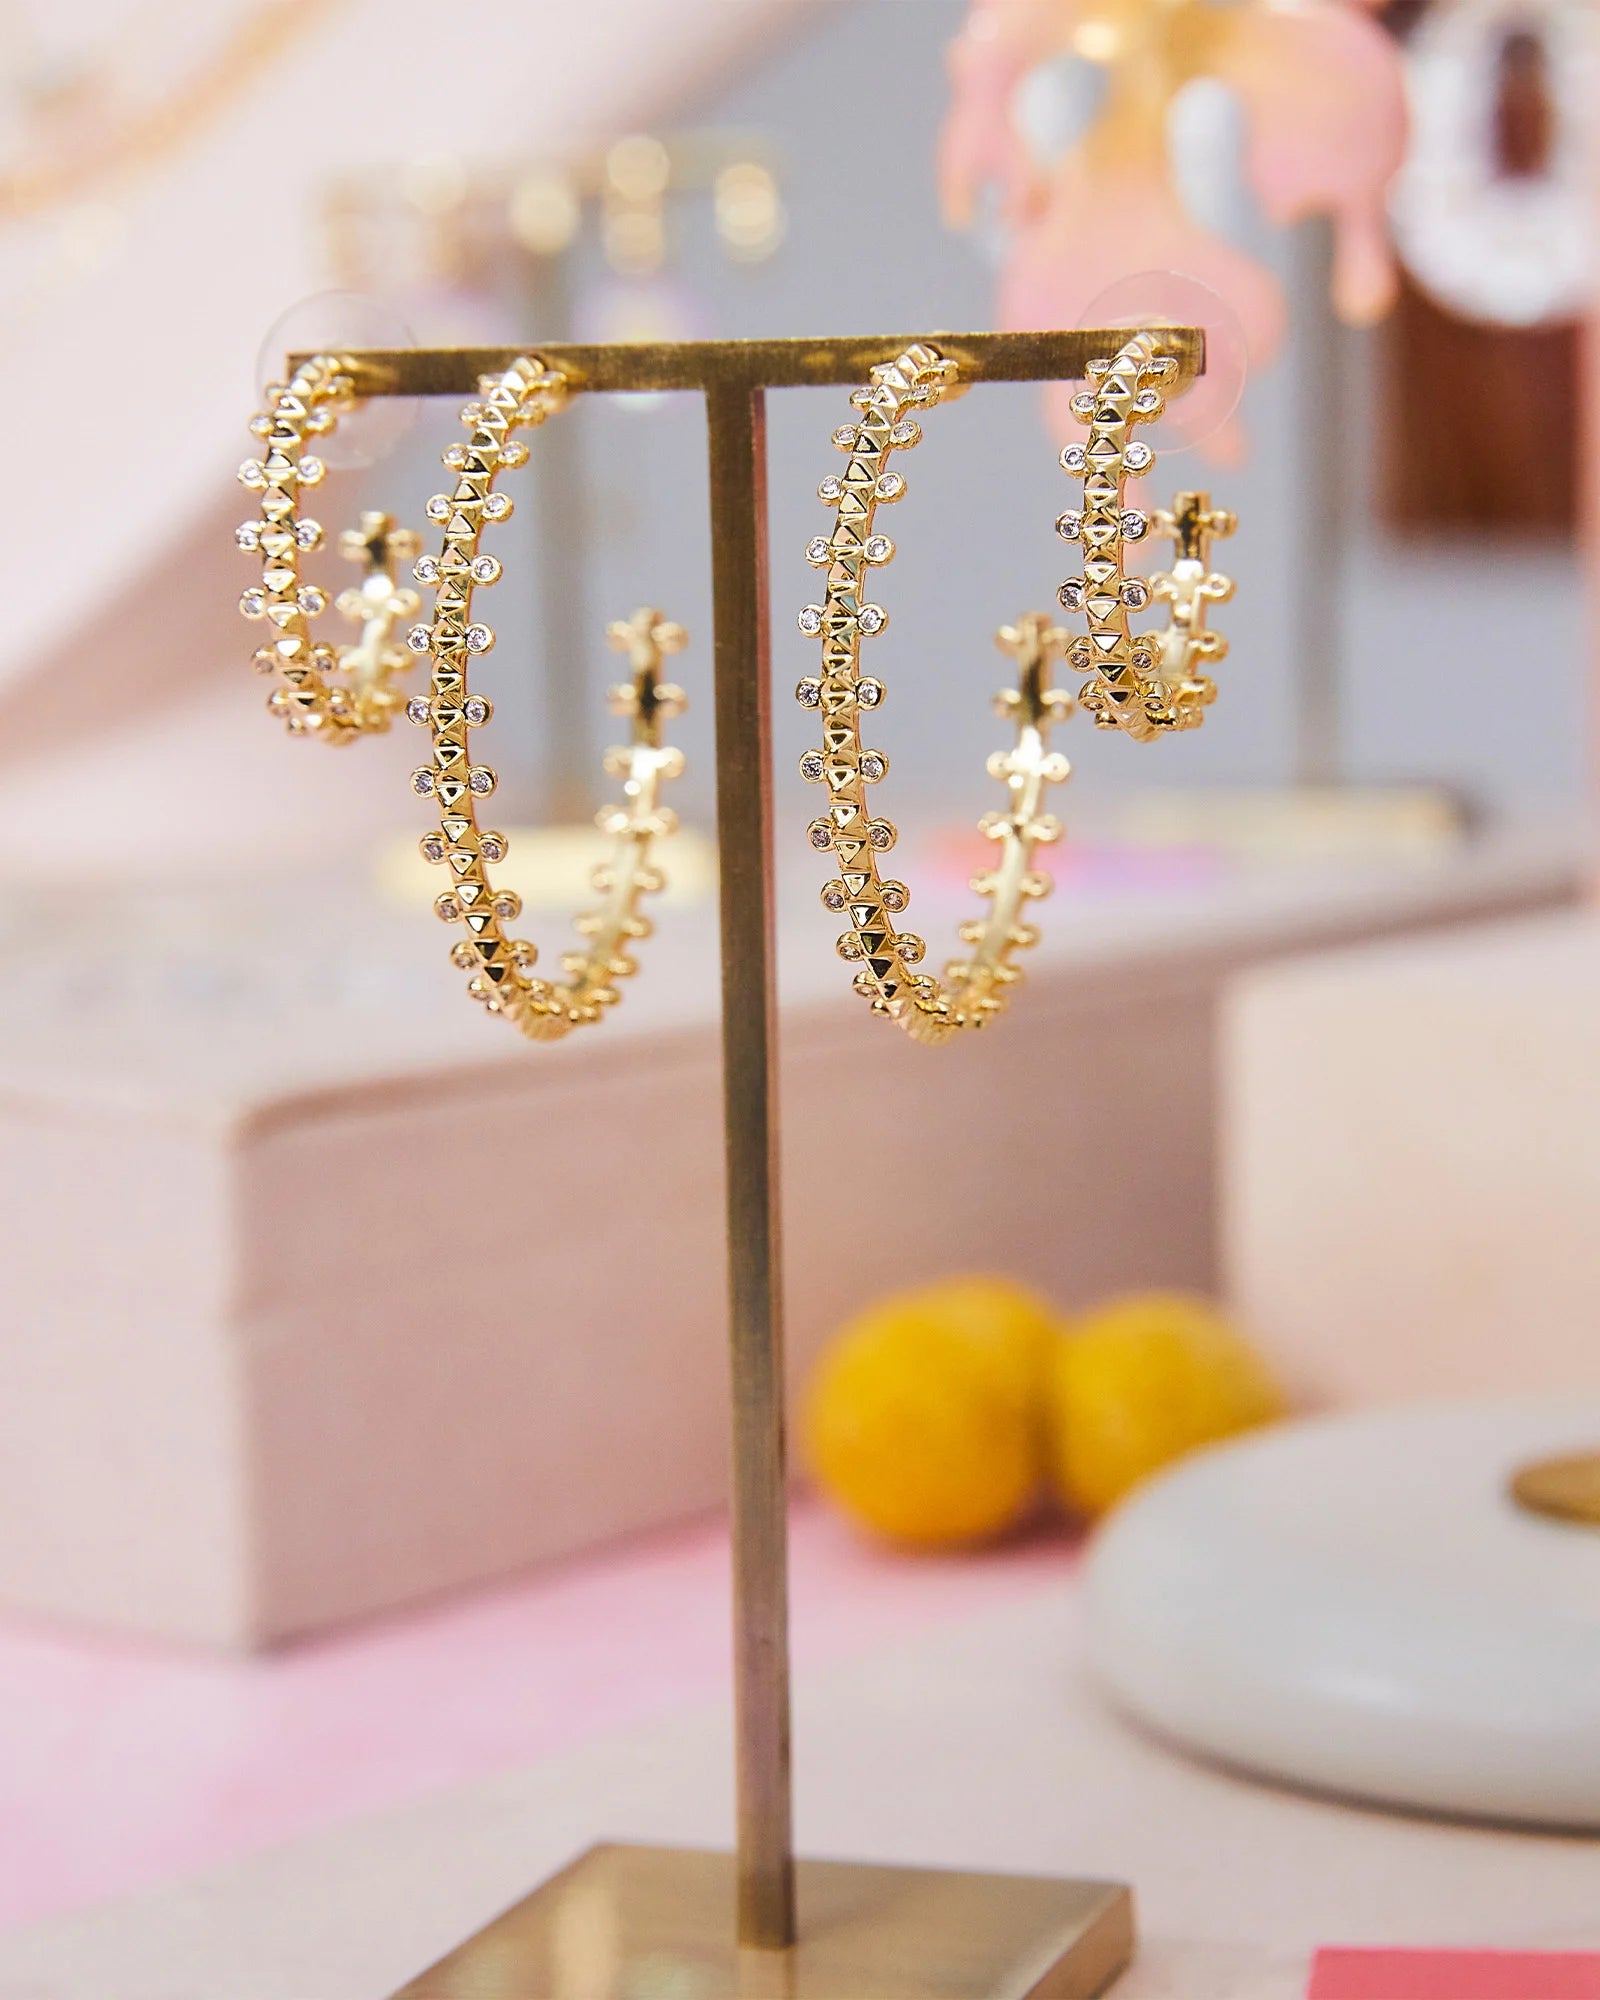 Kendra Scott Jada Hoop Earrings Gold White Crystal-Earrings-Kendra Scott-E00418GLD-The Twisted Chandelier